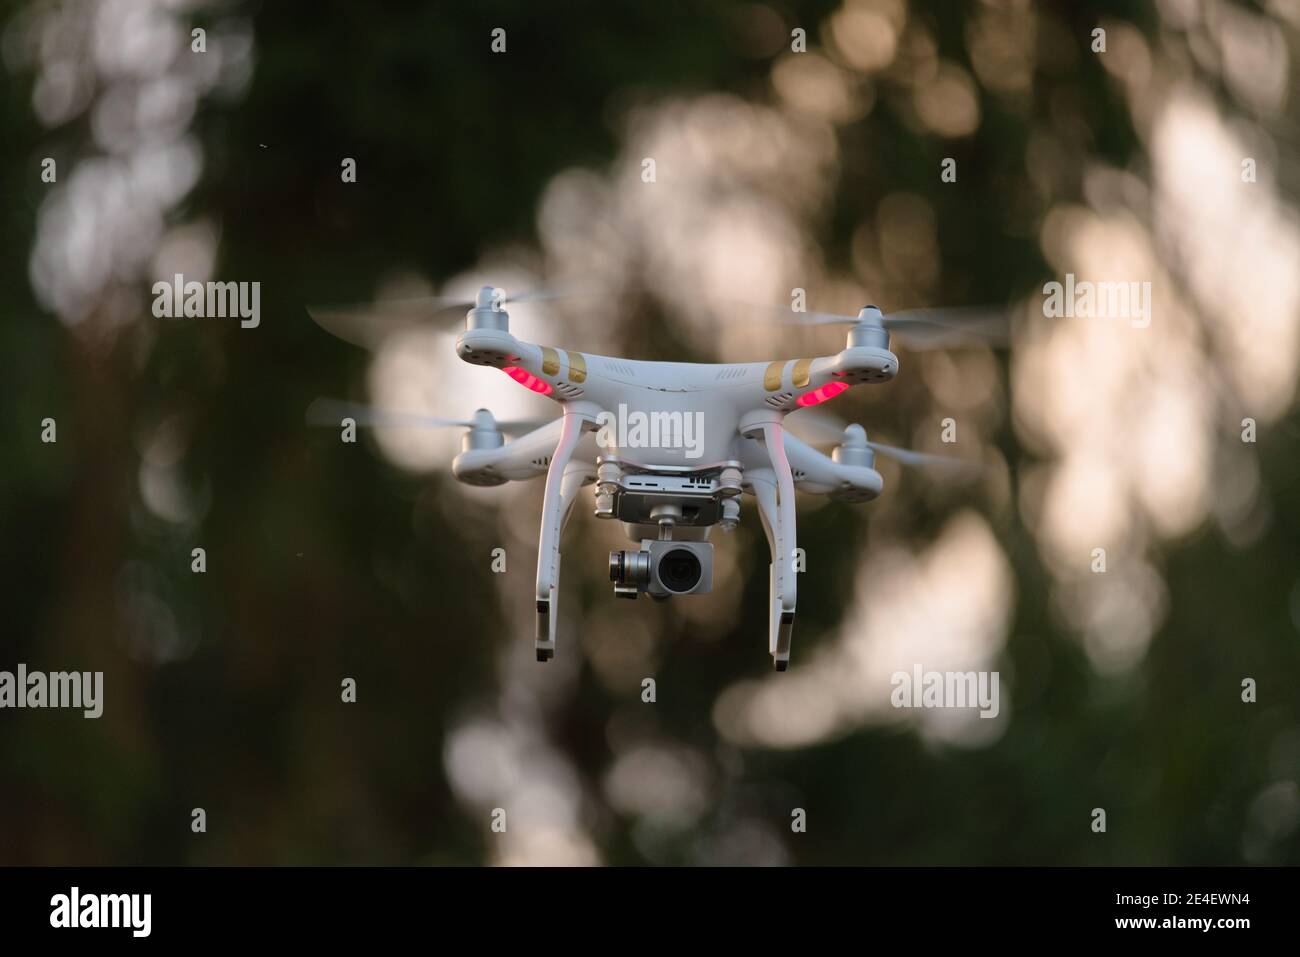 2 - drone à rotor quadruple planant en plein air pour la vidéographie ou la photographie. Avion télécommandé disponible dans le commerce avec stabilisation de nacelle Banque D'Images